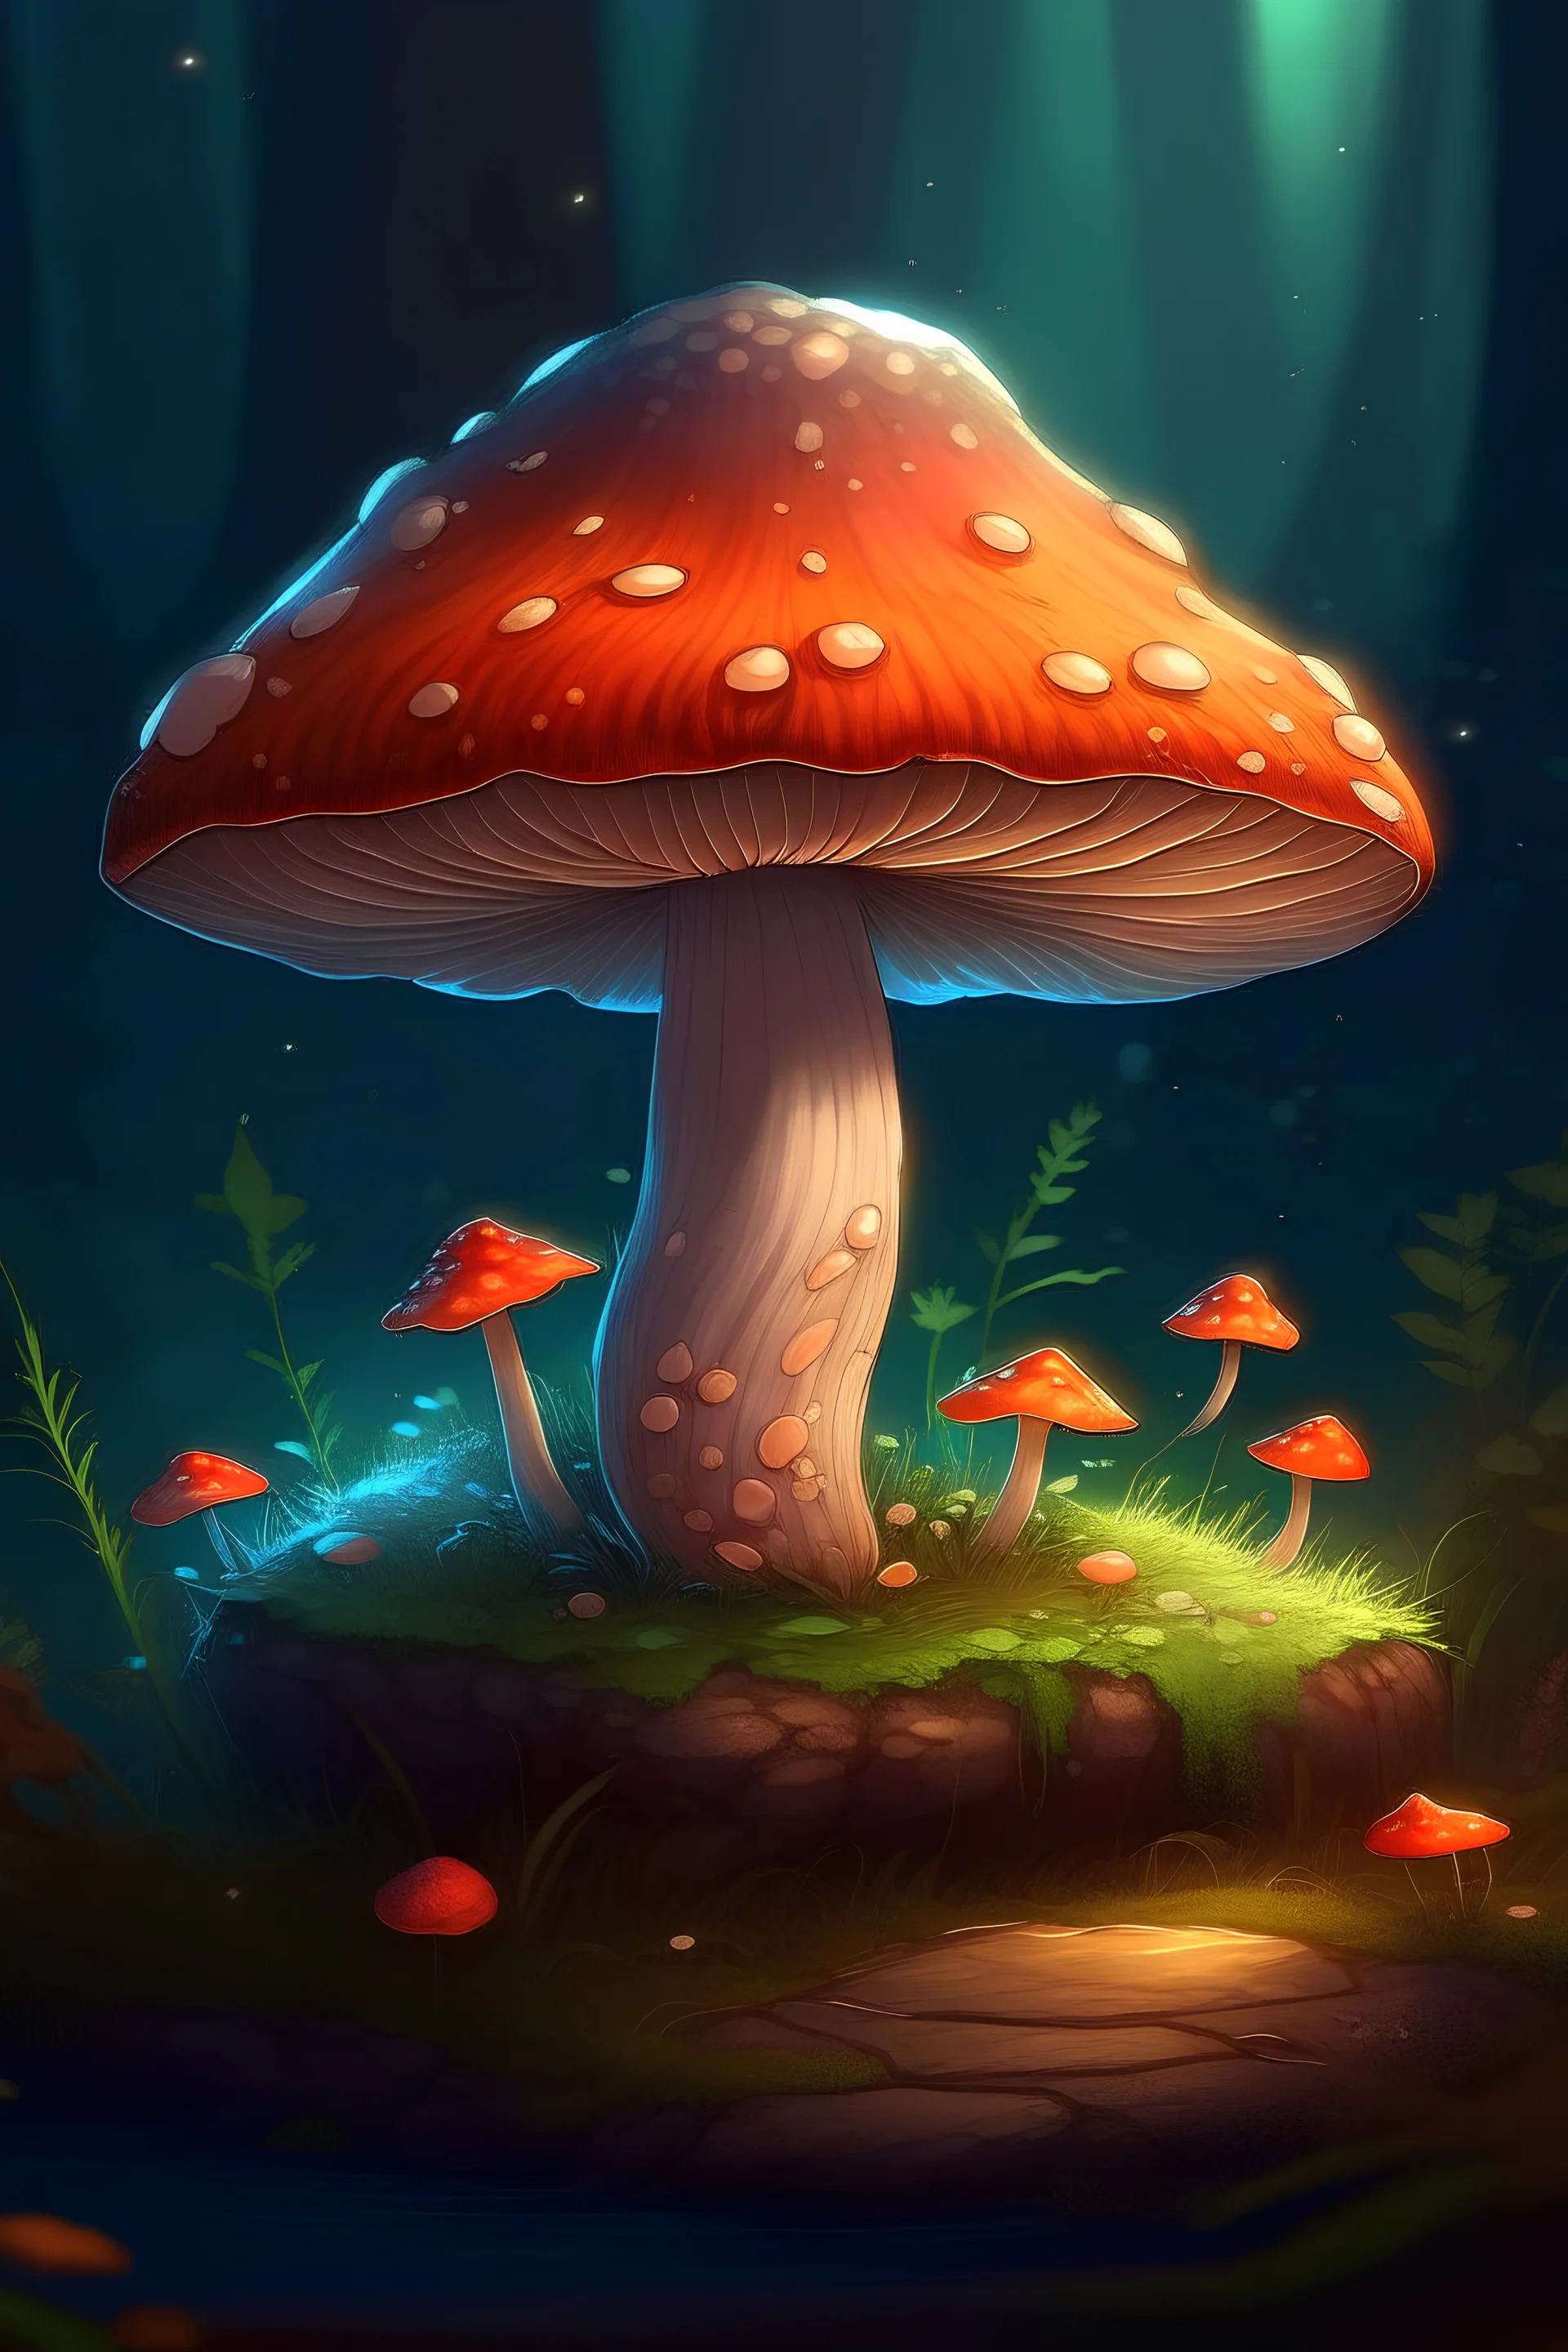 Magical mushroom